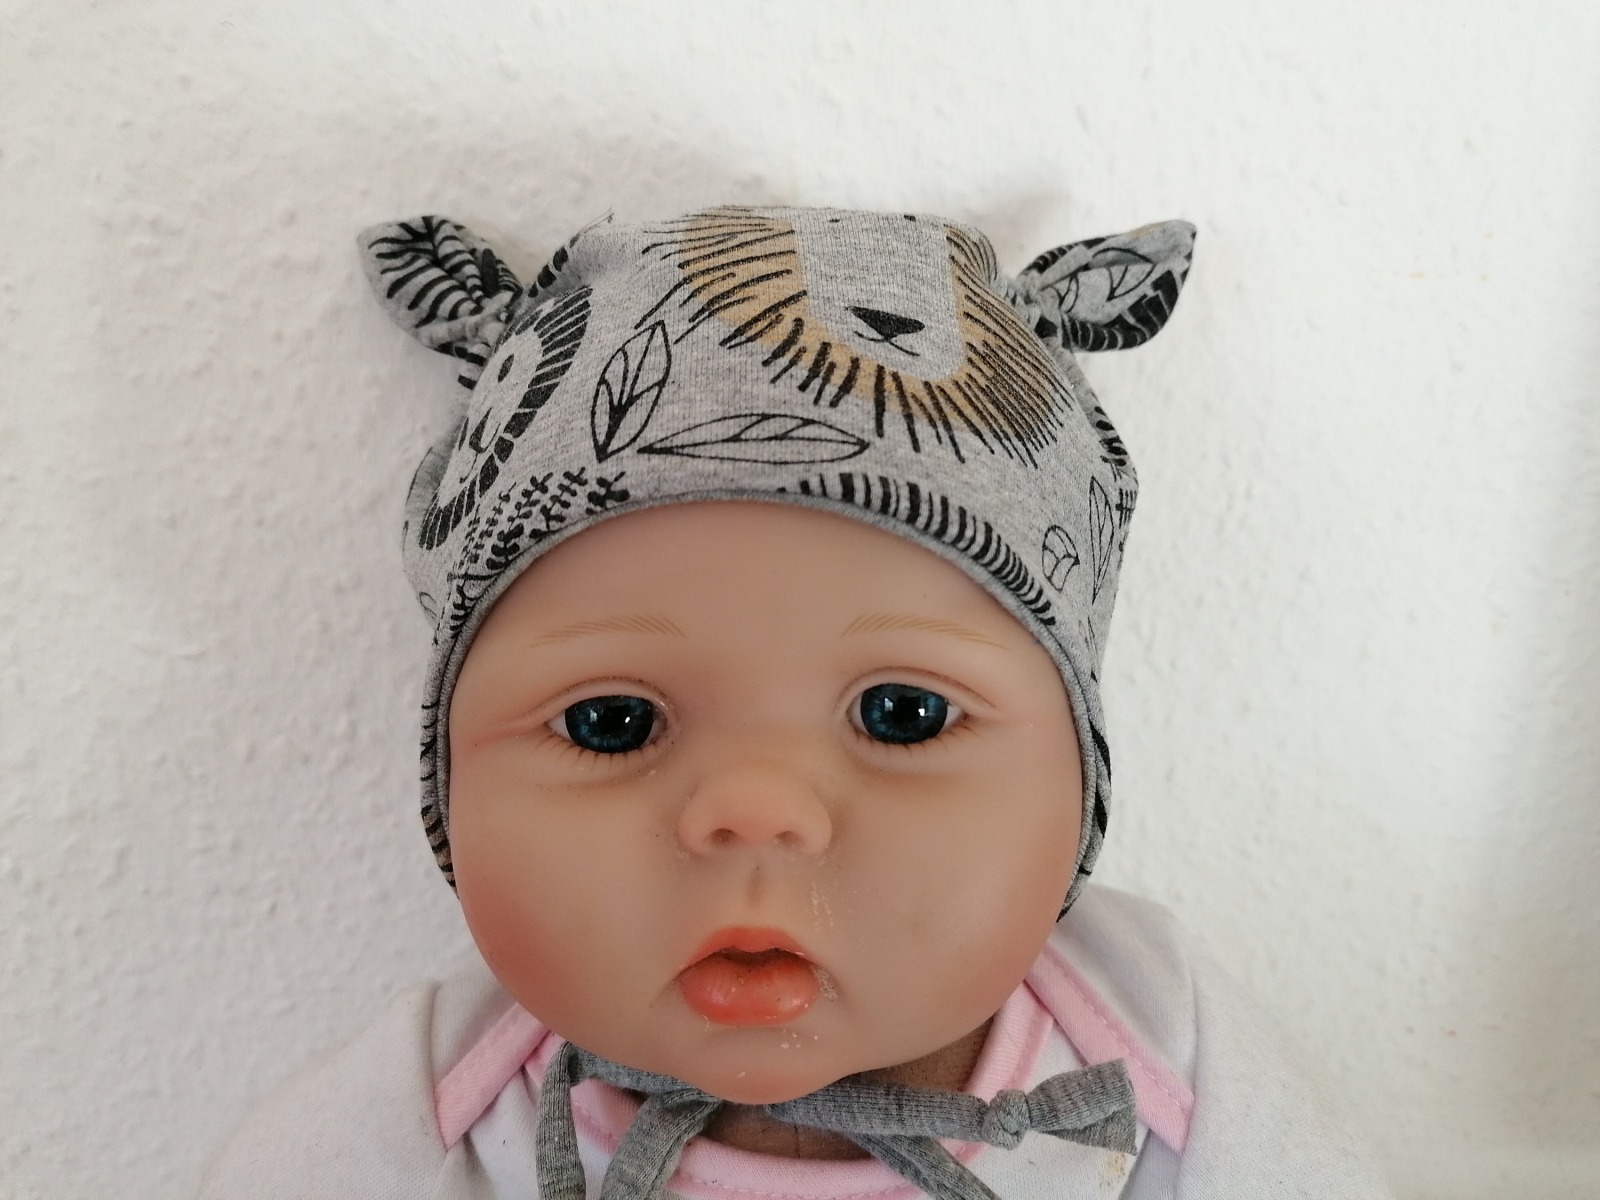 Baby Kind Ohrenmütze Mütze mit Öhrchen mit oder ohne Bindebänder Federn altrosa mit Jersey- Fleece- oder Plüschfutter Kopfumfang 36 - 52cm 4